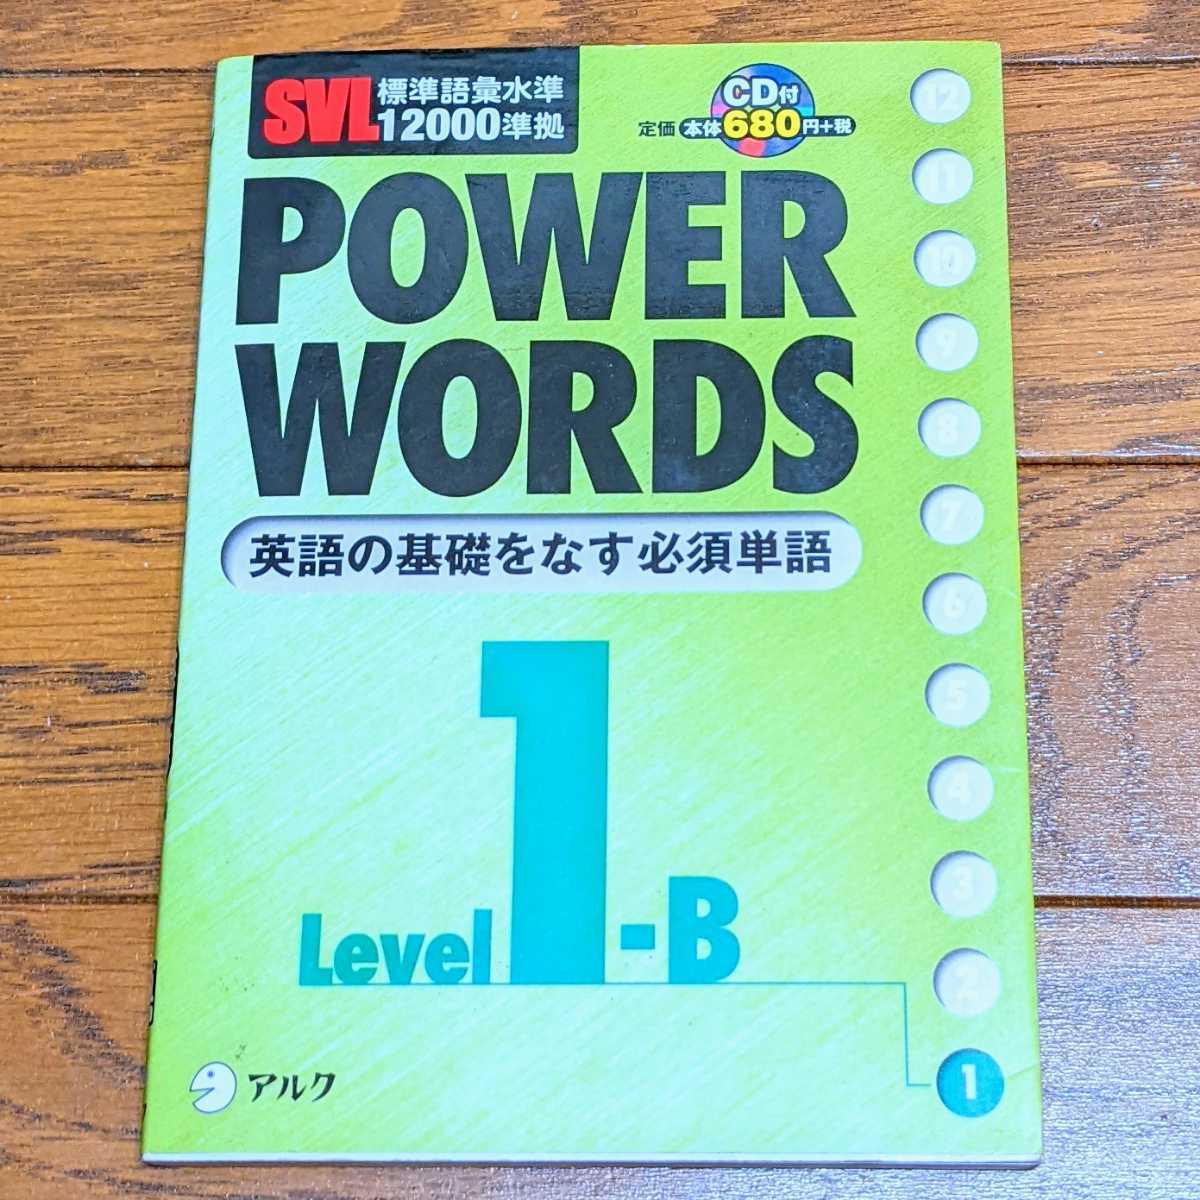 アルク Power words 英単語 入門 CD付 試験